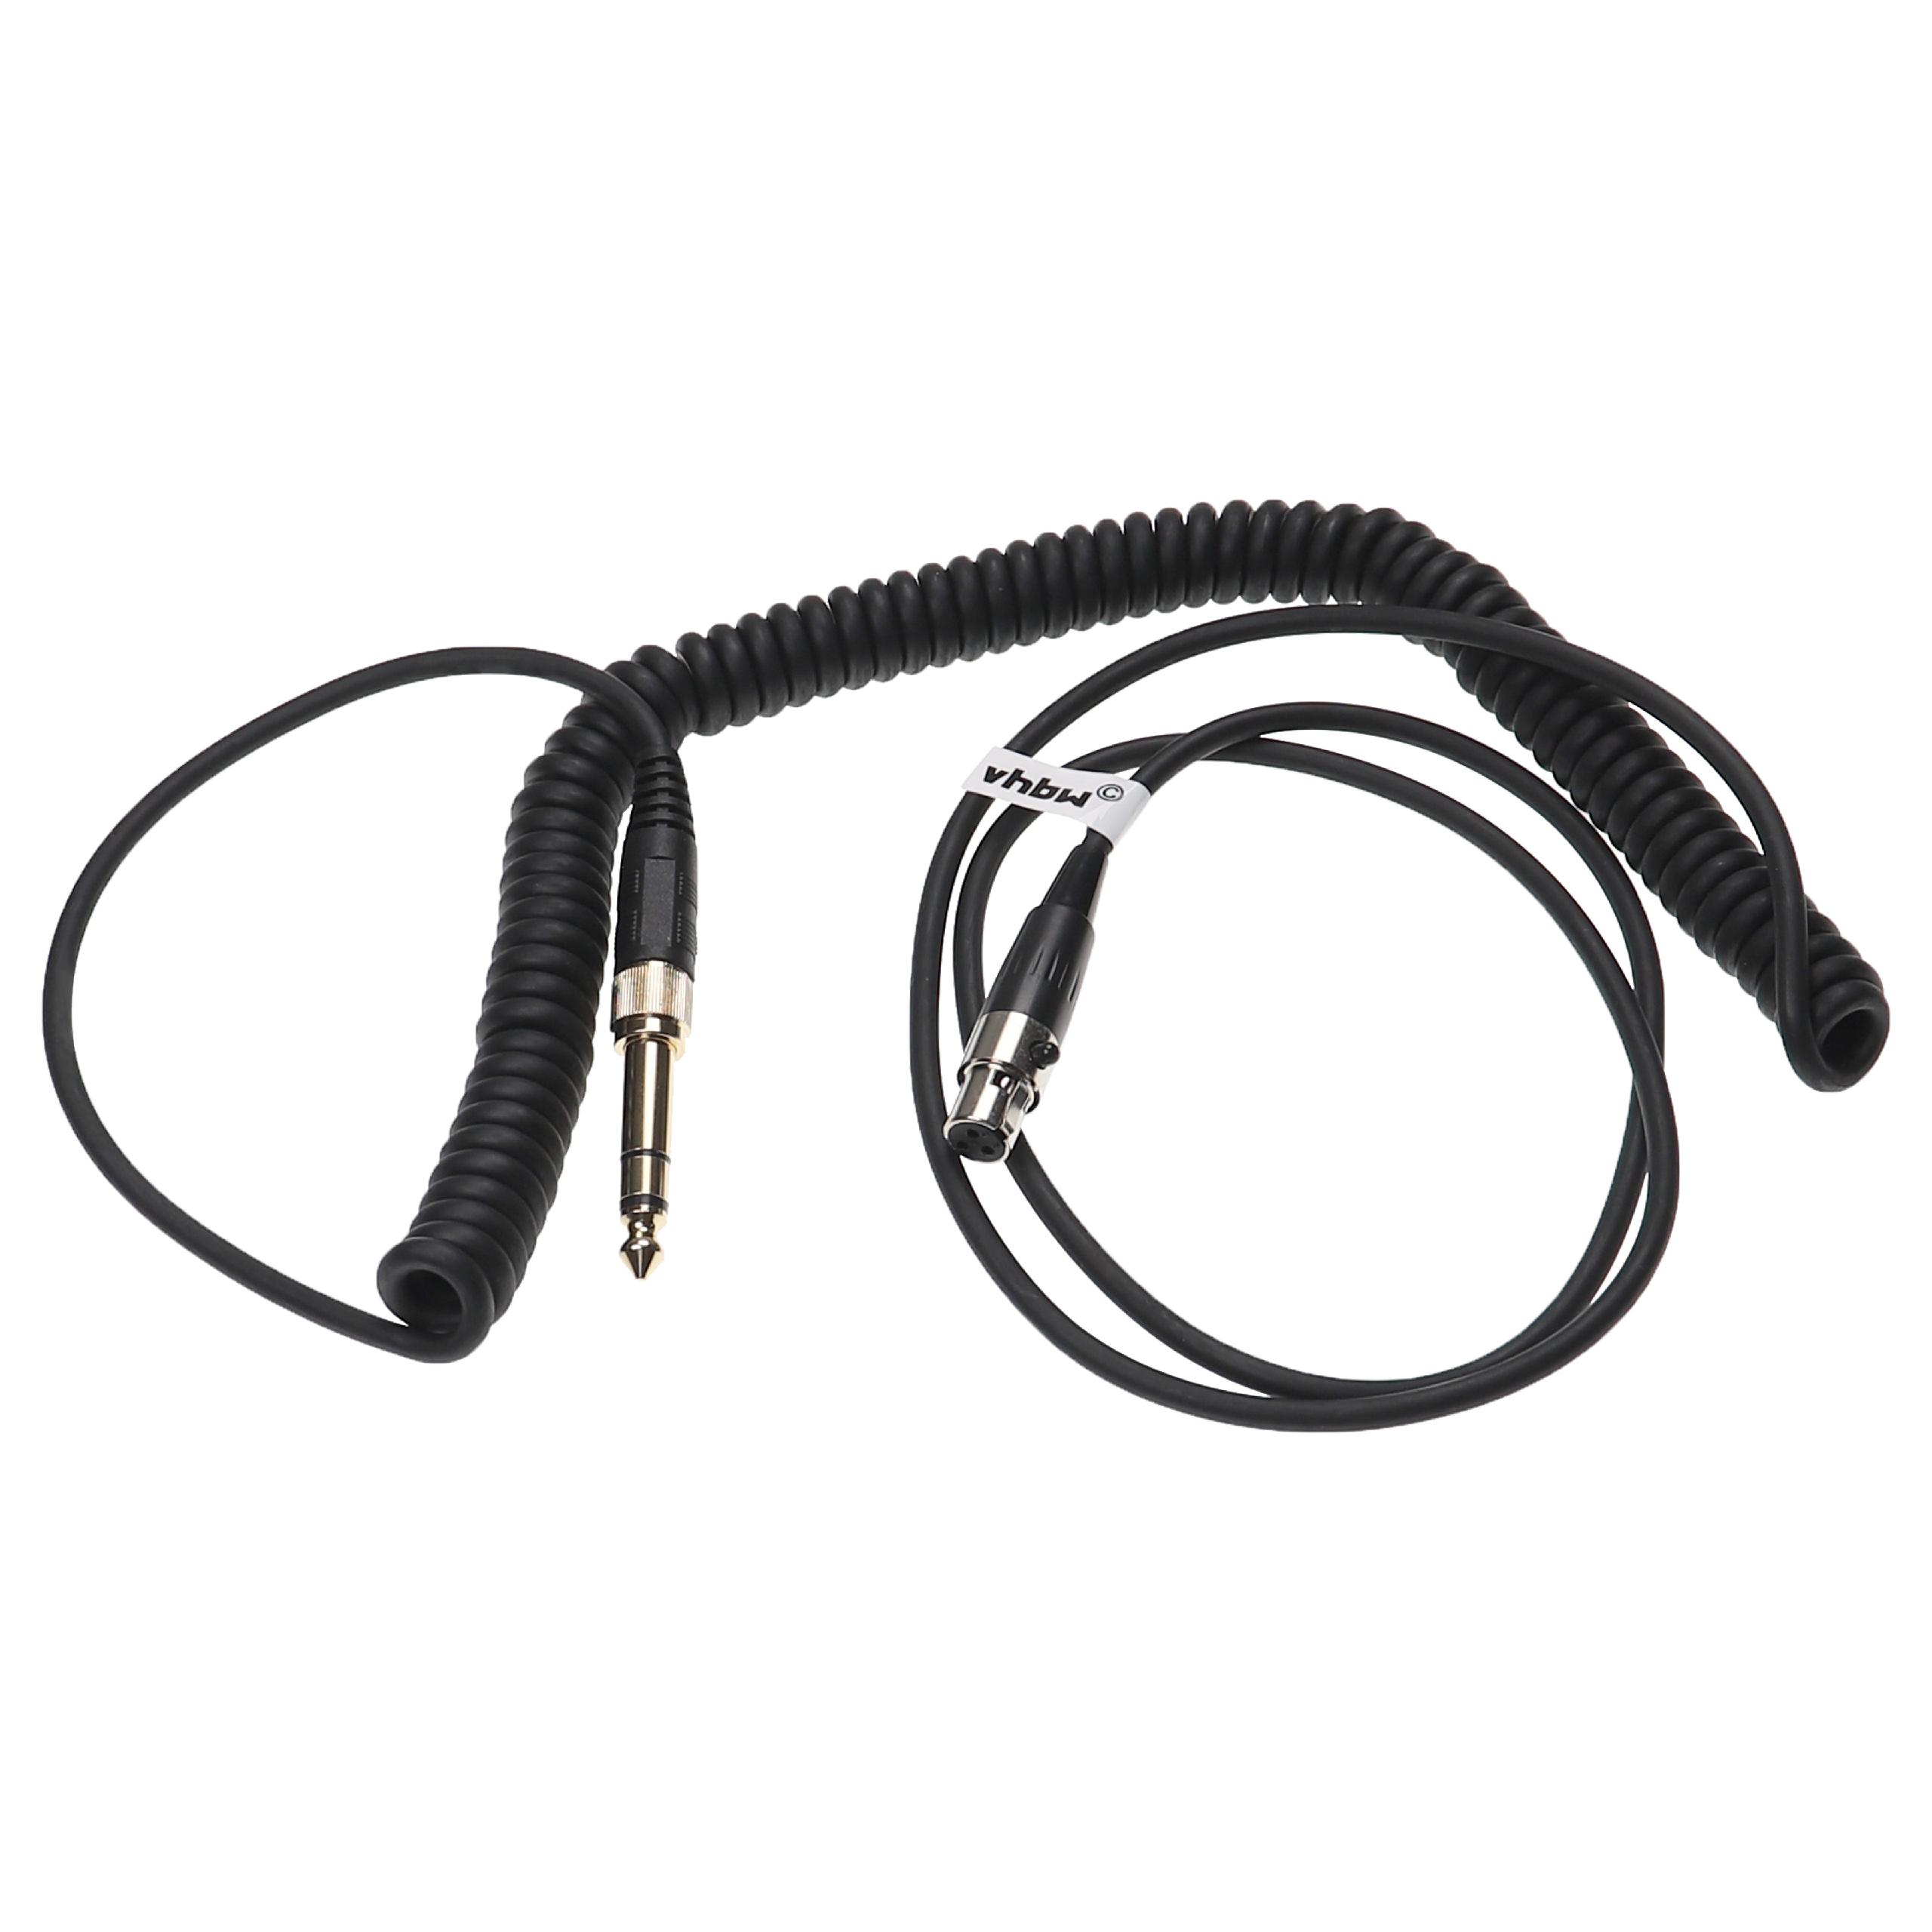 Headphones Cable suitable for AKG / Pioneer K240 MK II etc., 100 - 300 cm